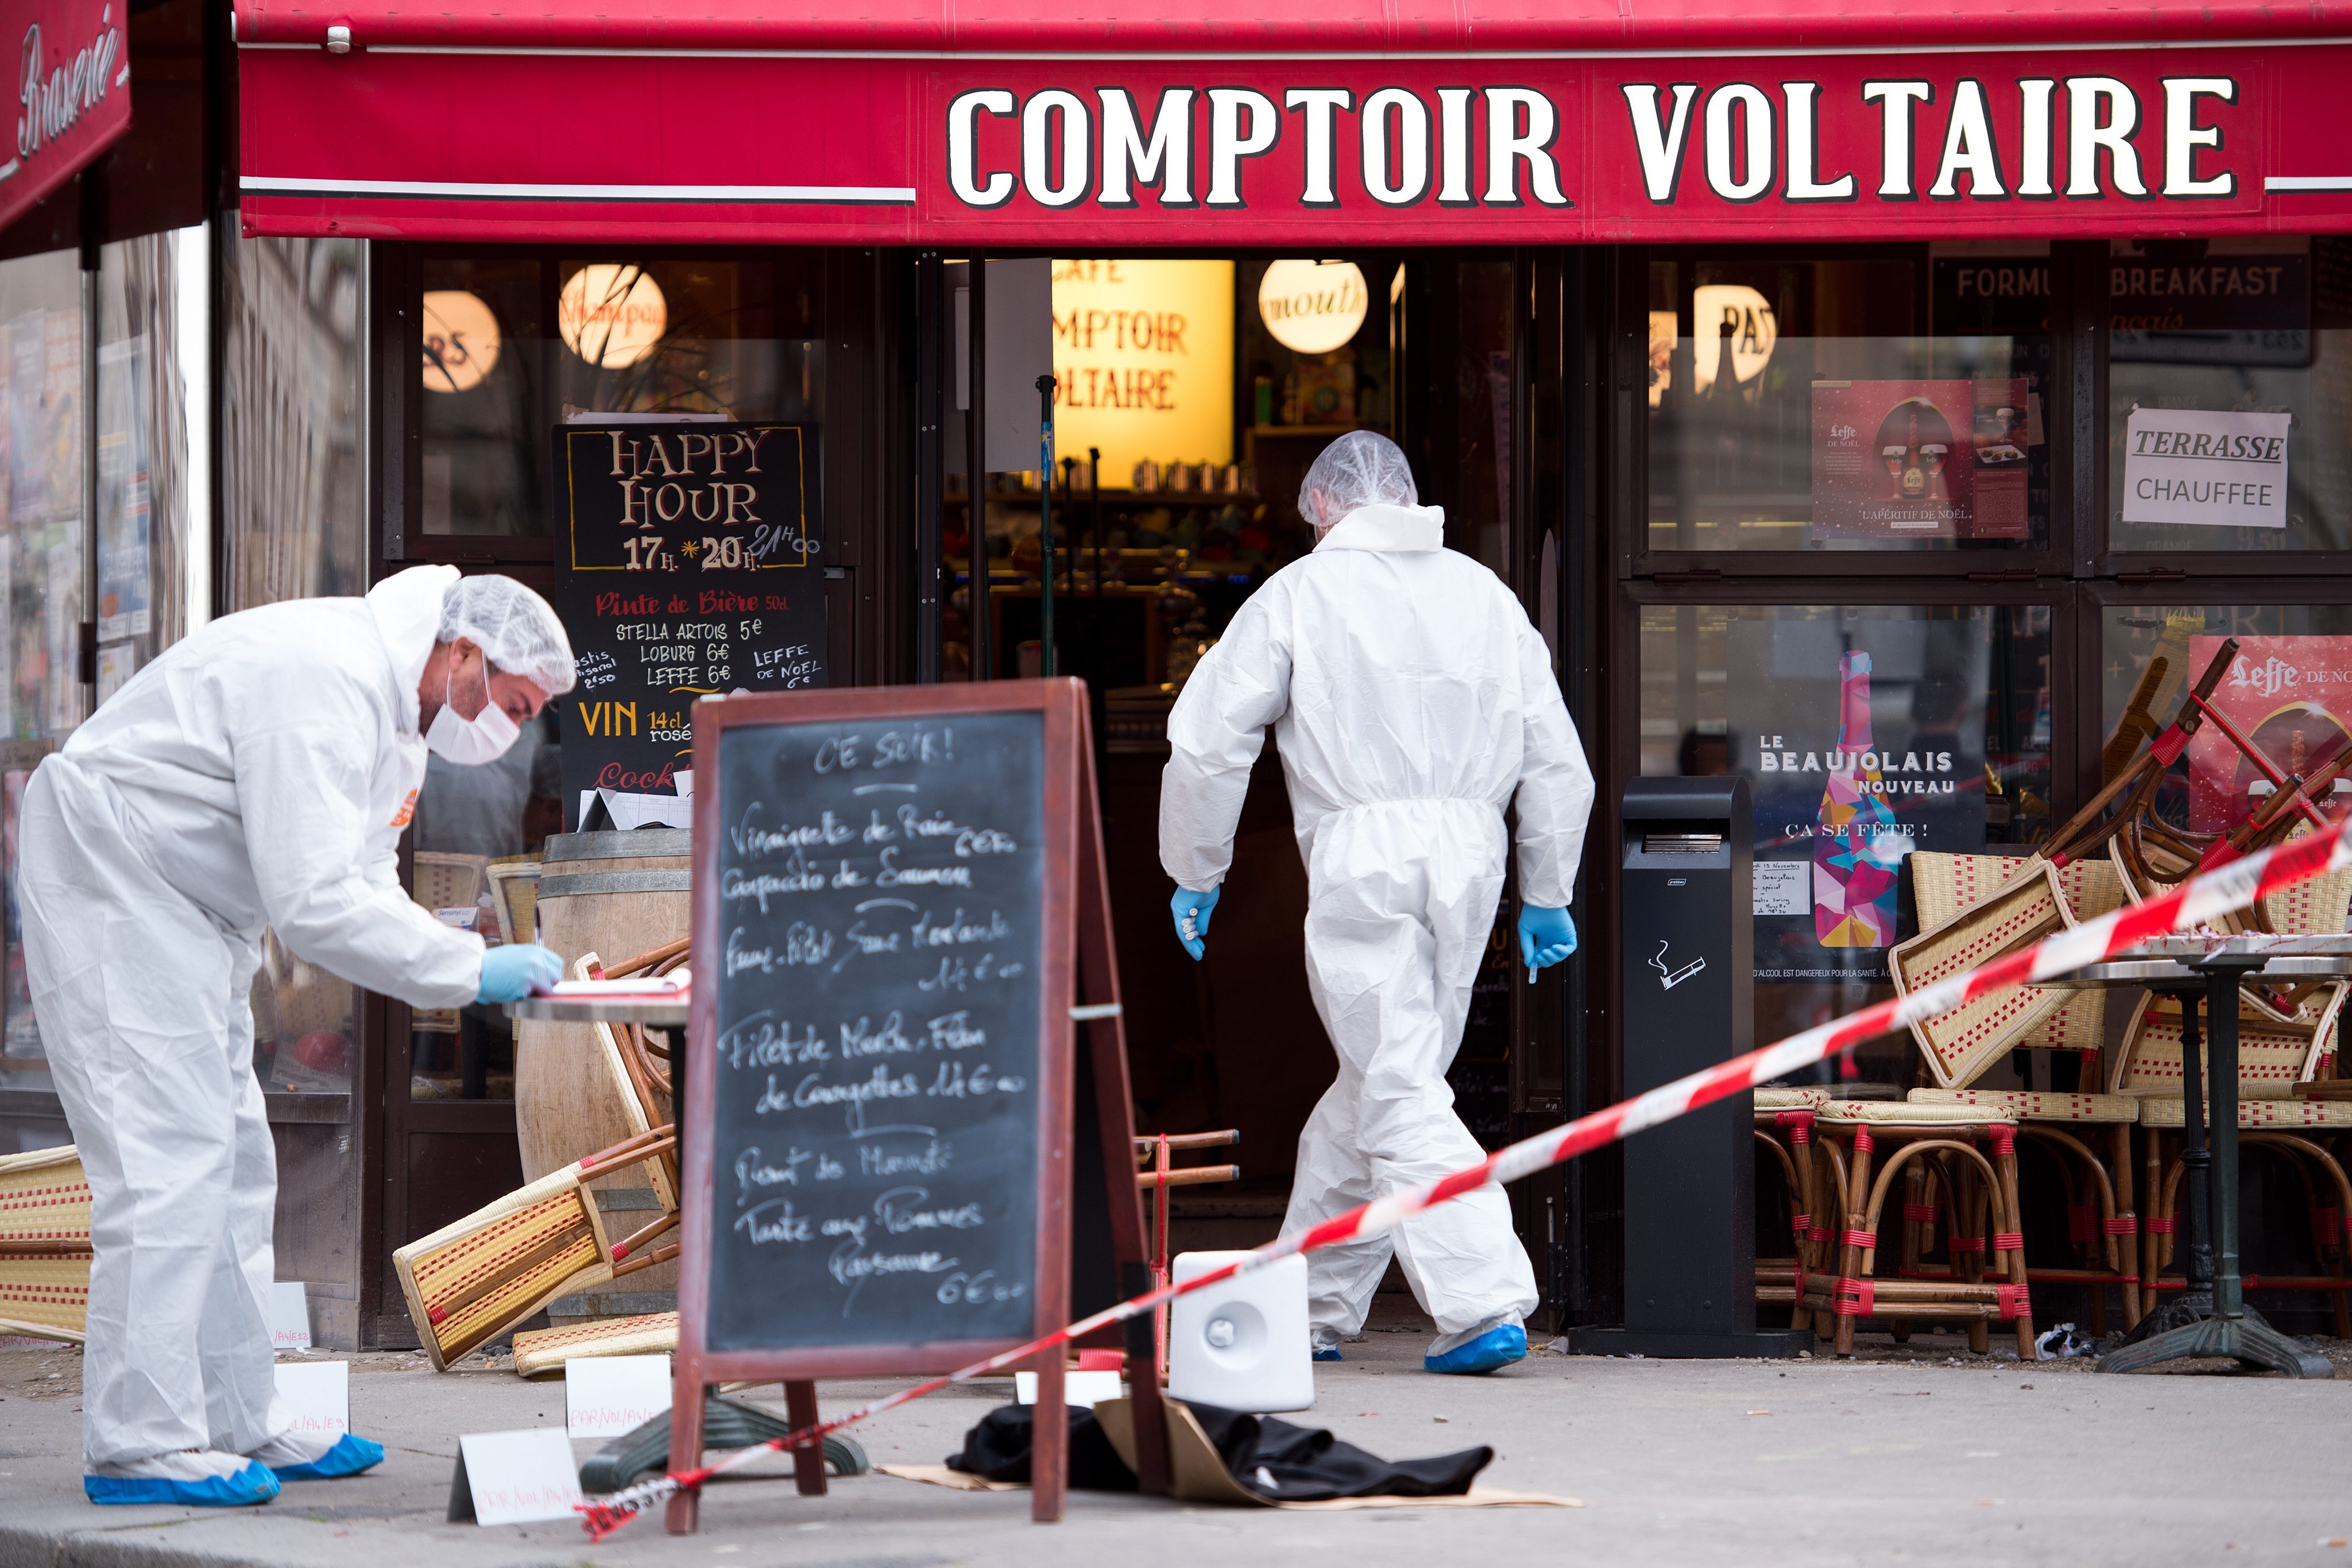 Най-малко 128 са жертвите на атаките във френската столица. Ранени са още 180 души, 99 от които са в тежко състояние